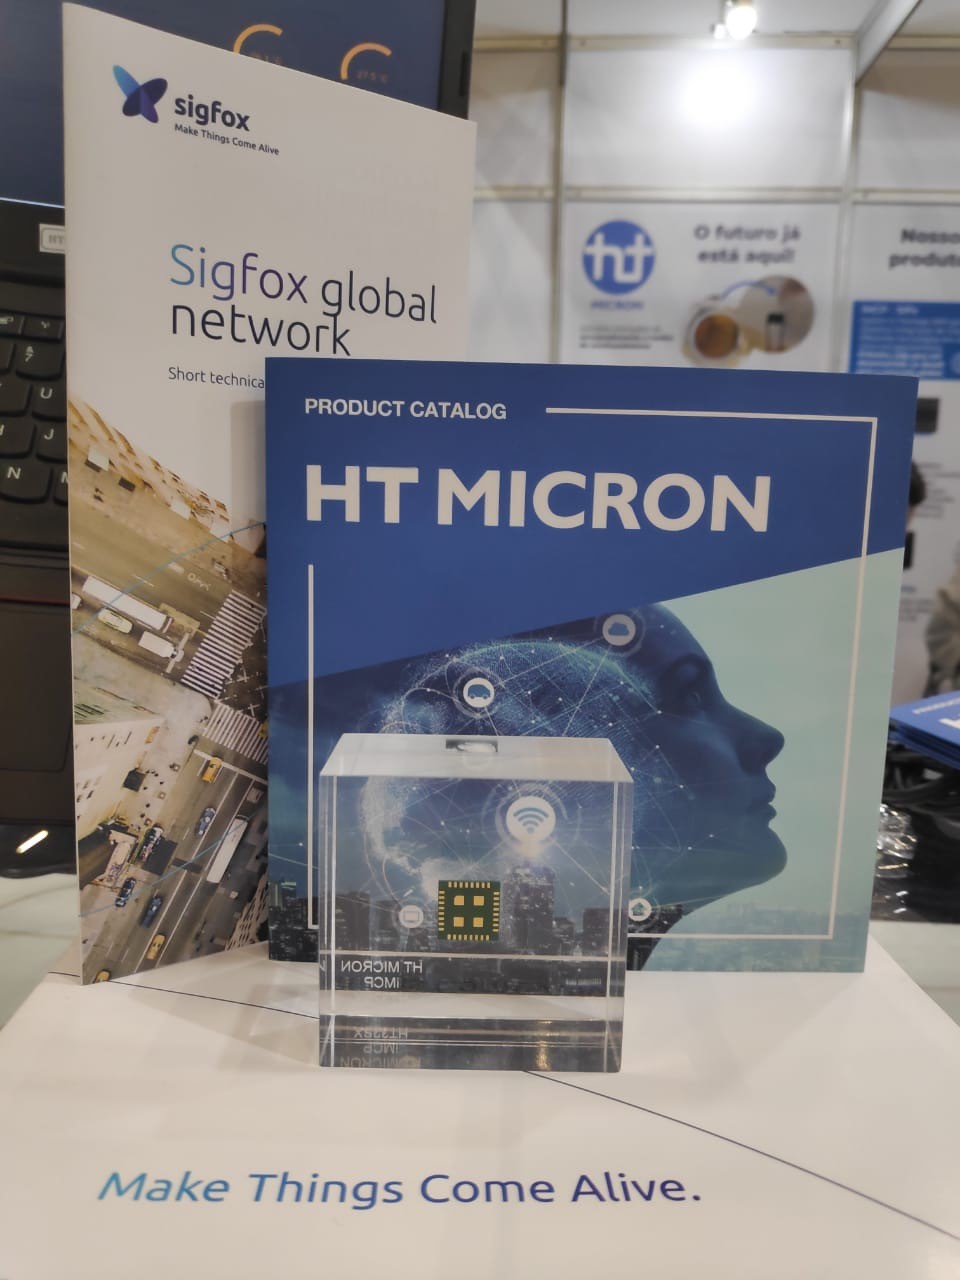 HT Micron lança o primeiro chip nacional para Internet das Coisas protocolado via @Sigfox durante evento em São Paulo